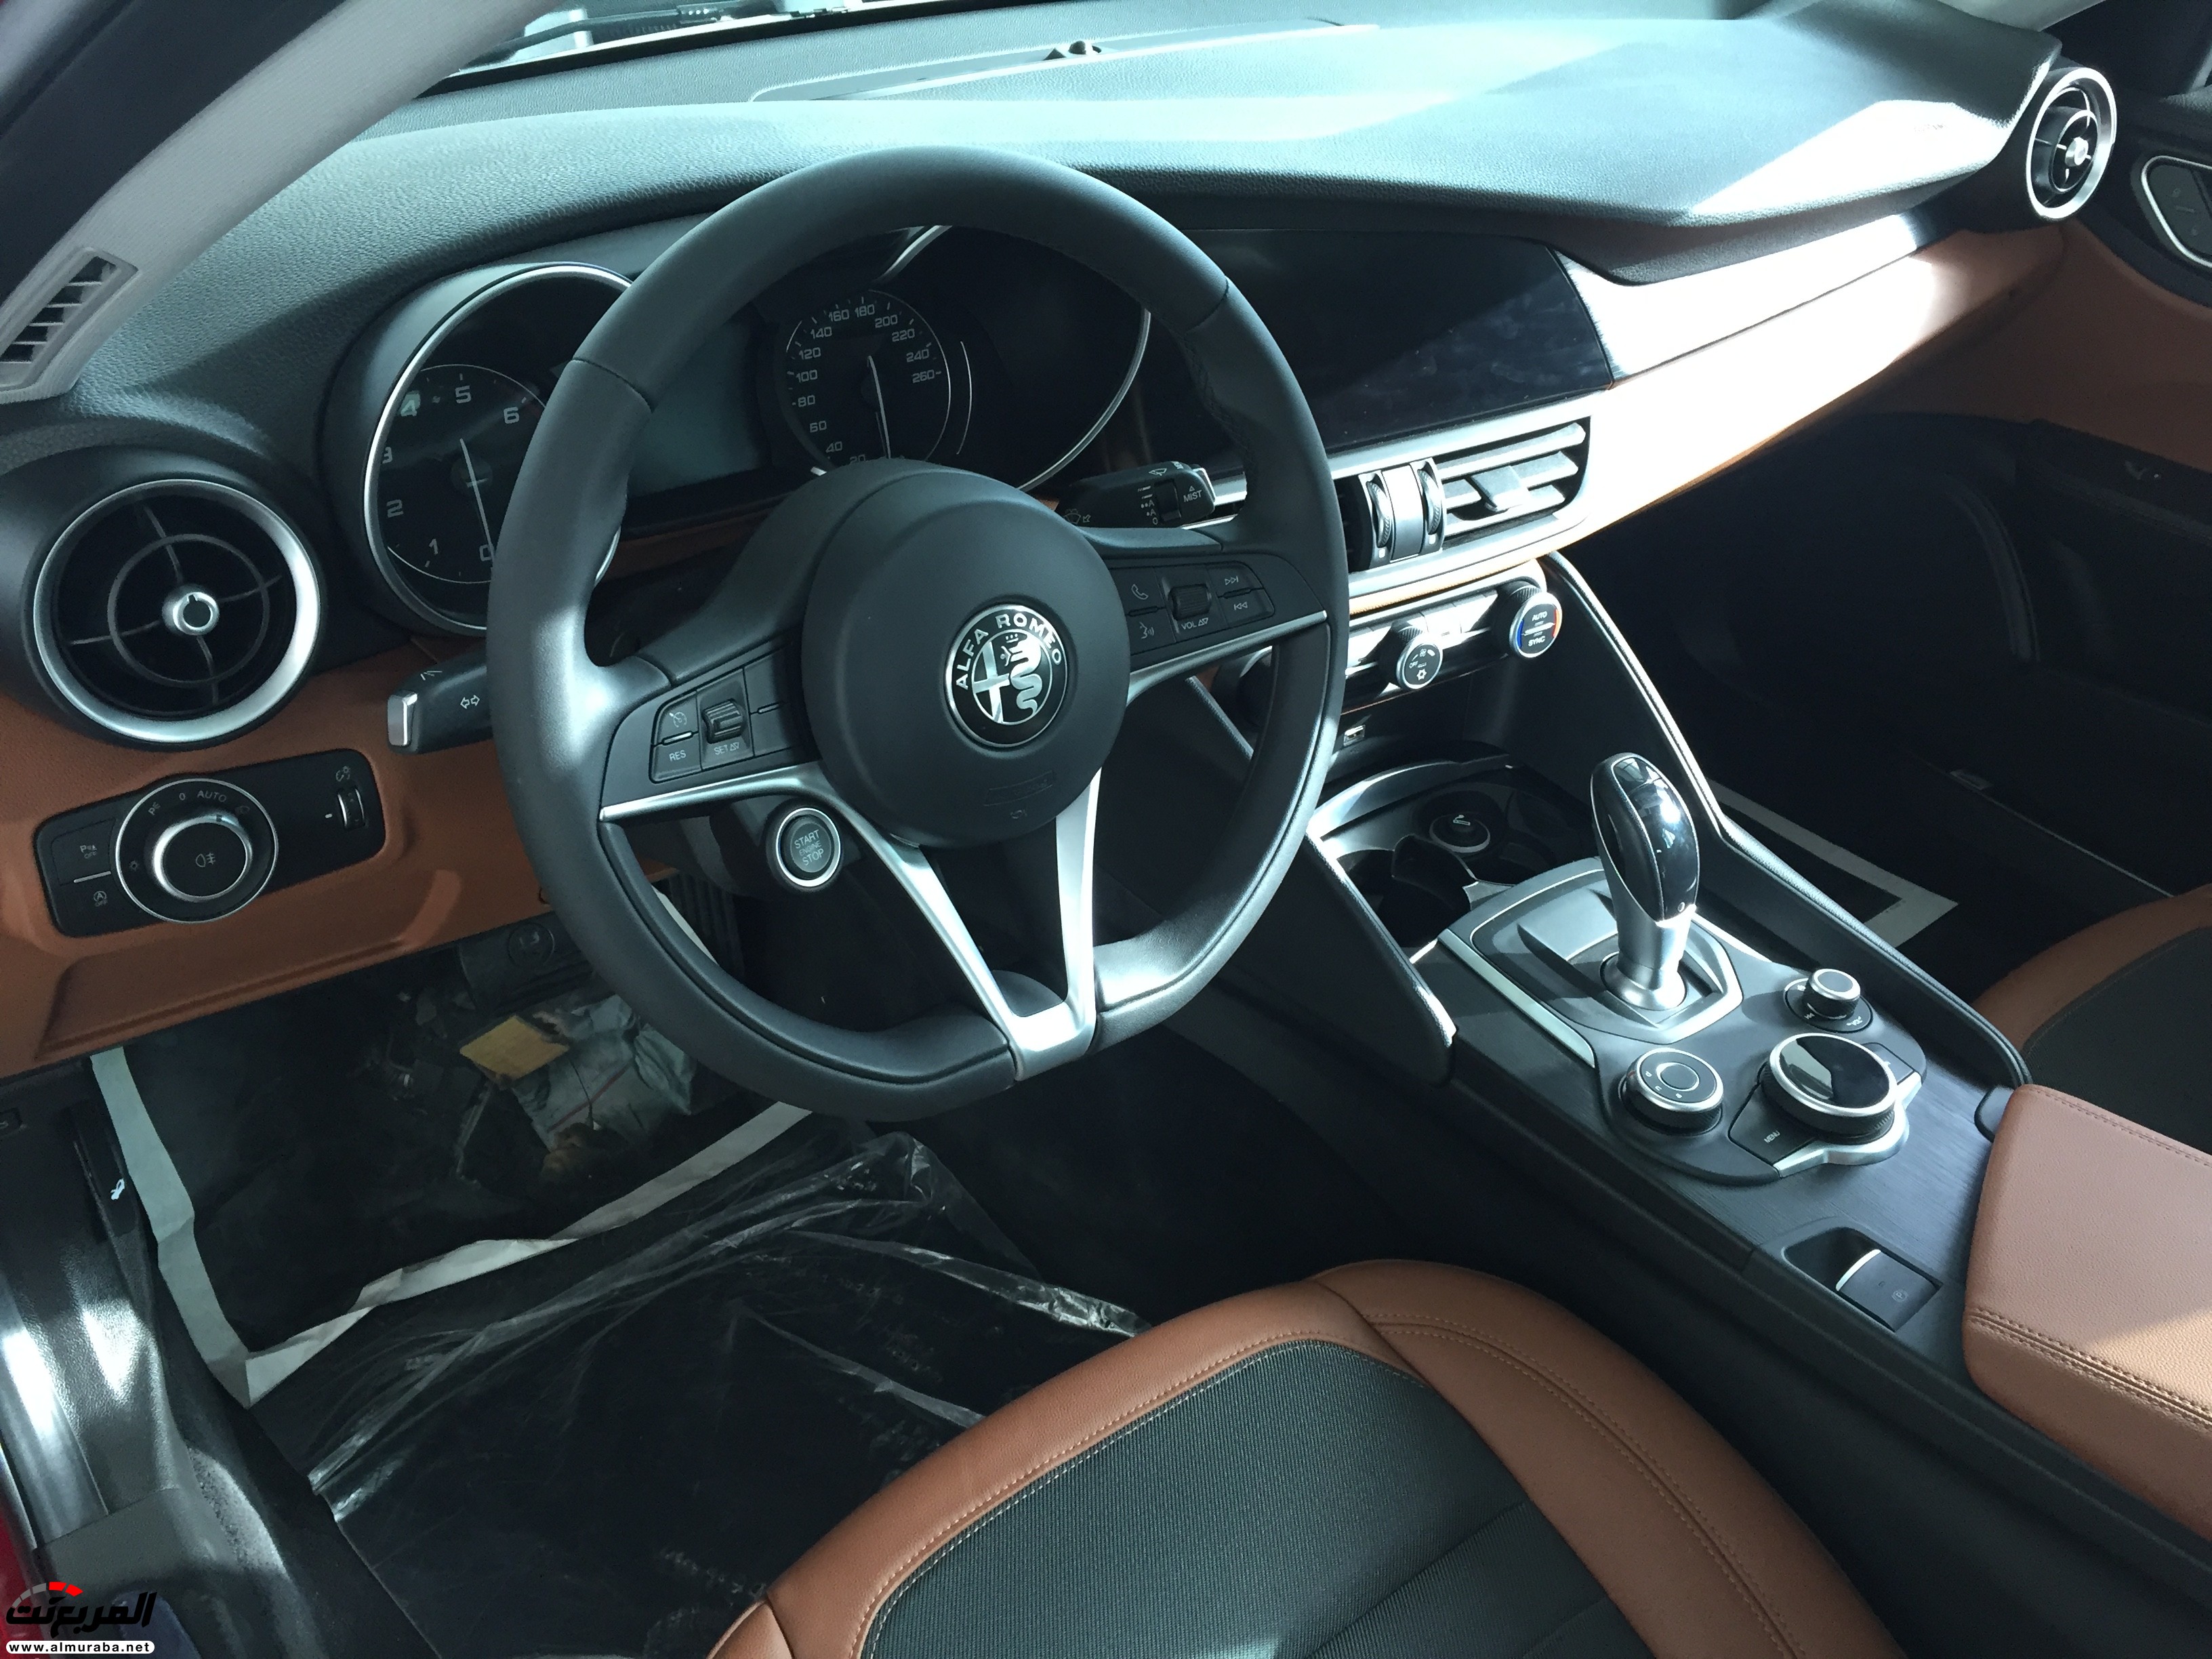 الفا روميو جوليا 2017 تصل الى السعودية وكالة المتحدة "صور ومواصفات واسعار" Alfa Romeo Giulia 9